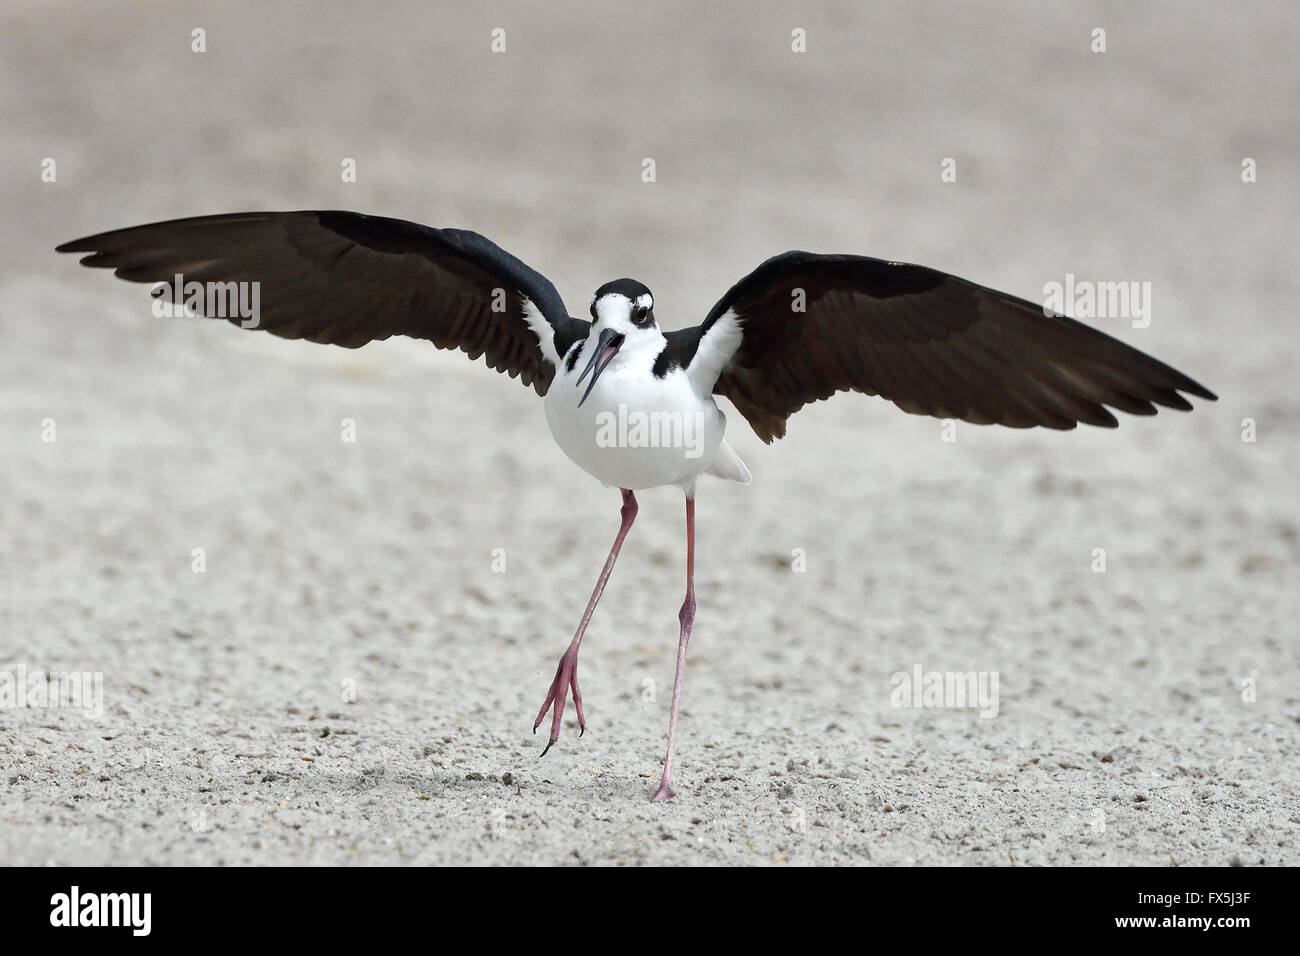 Nero-trampolo a collo alto con ali aperte a piedi nella sabbia Foto Stock